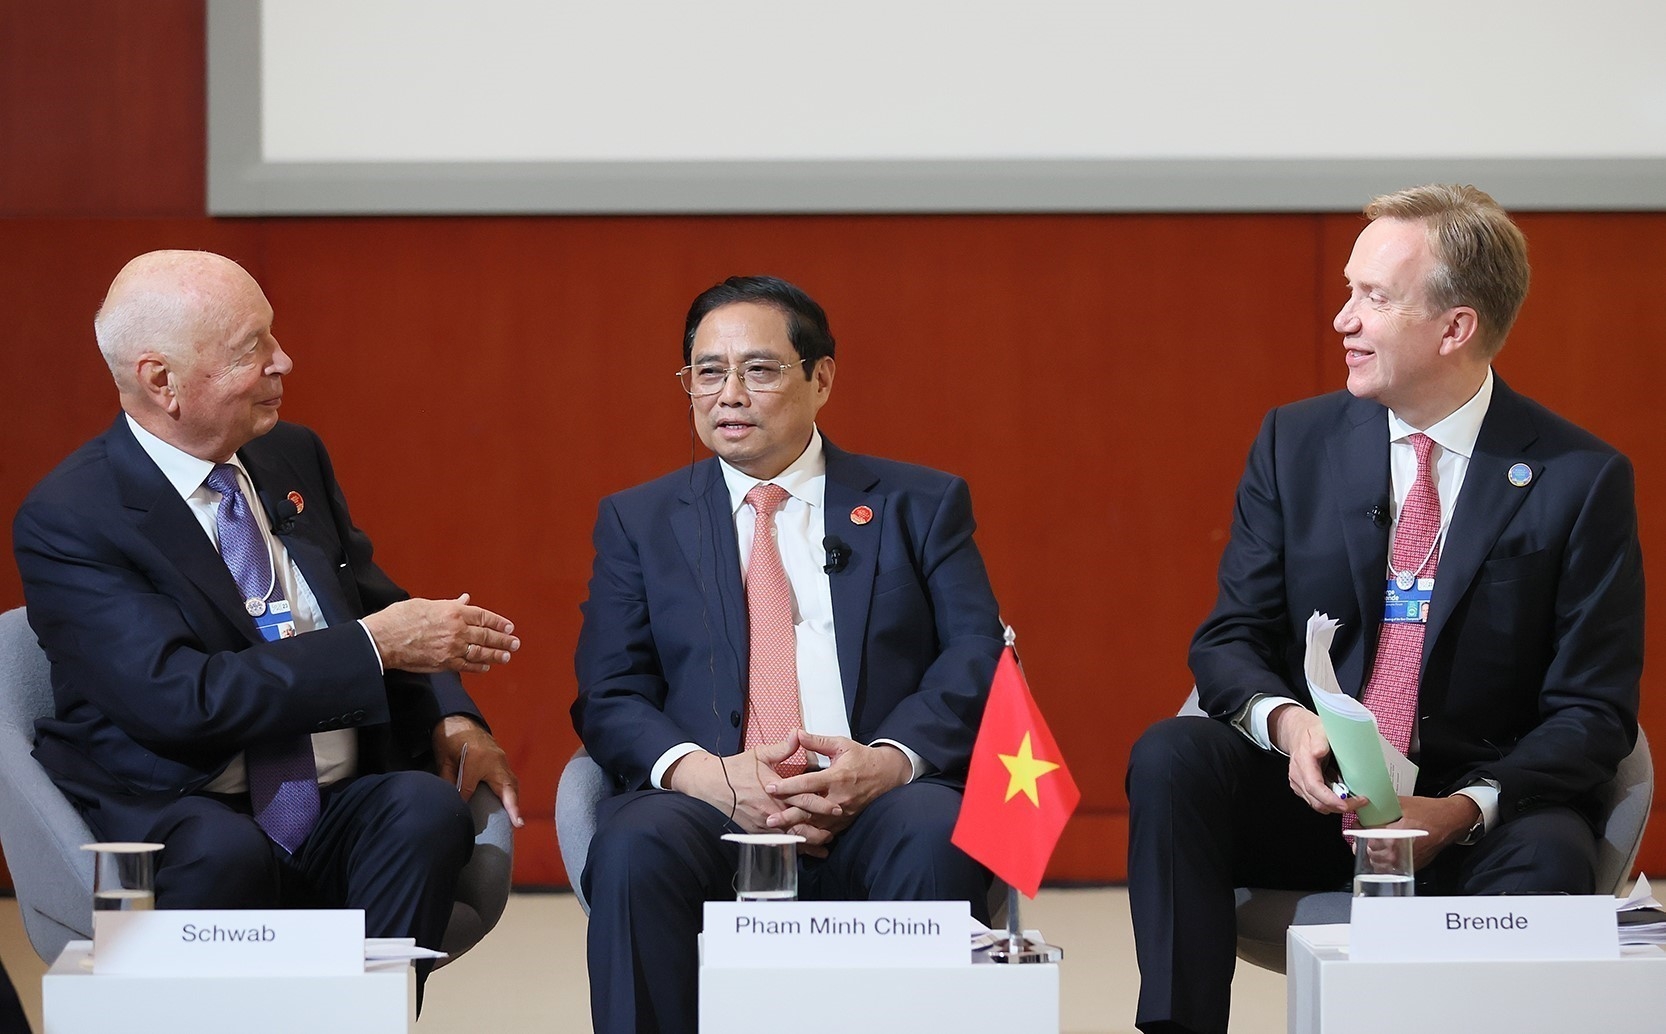 范明政总理（中）与世界经济论坛创始人兼执行主席克劳斯·施瓦布（左）和世界经济论坛主席博尔格·布伦德（右）进行交谈。图自越通社